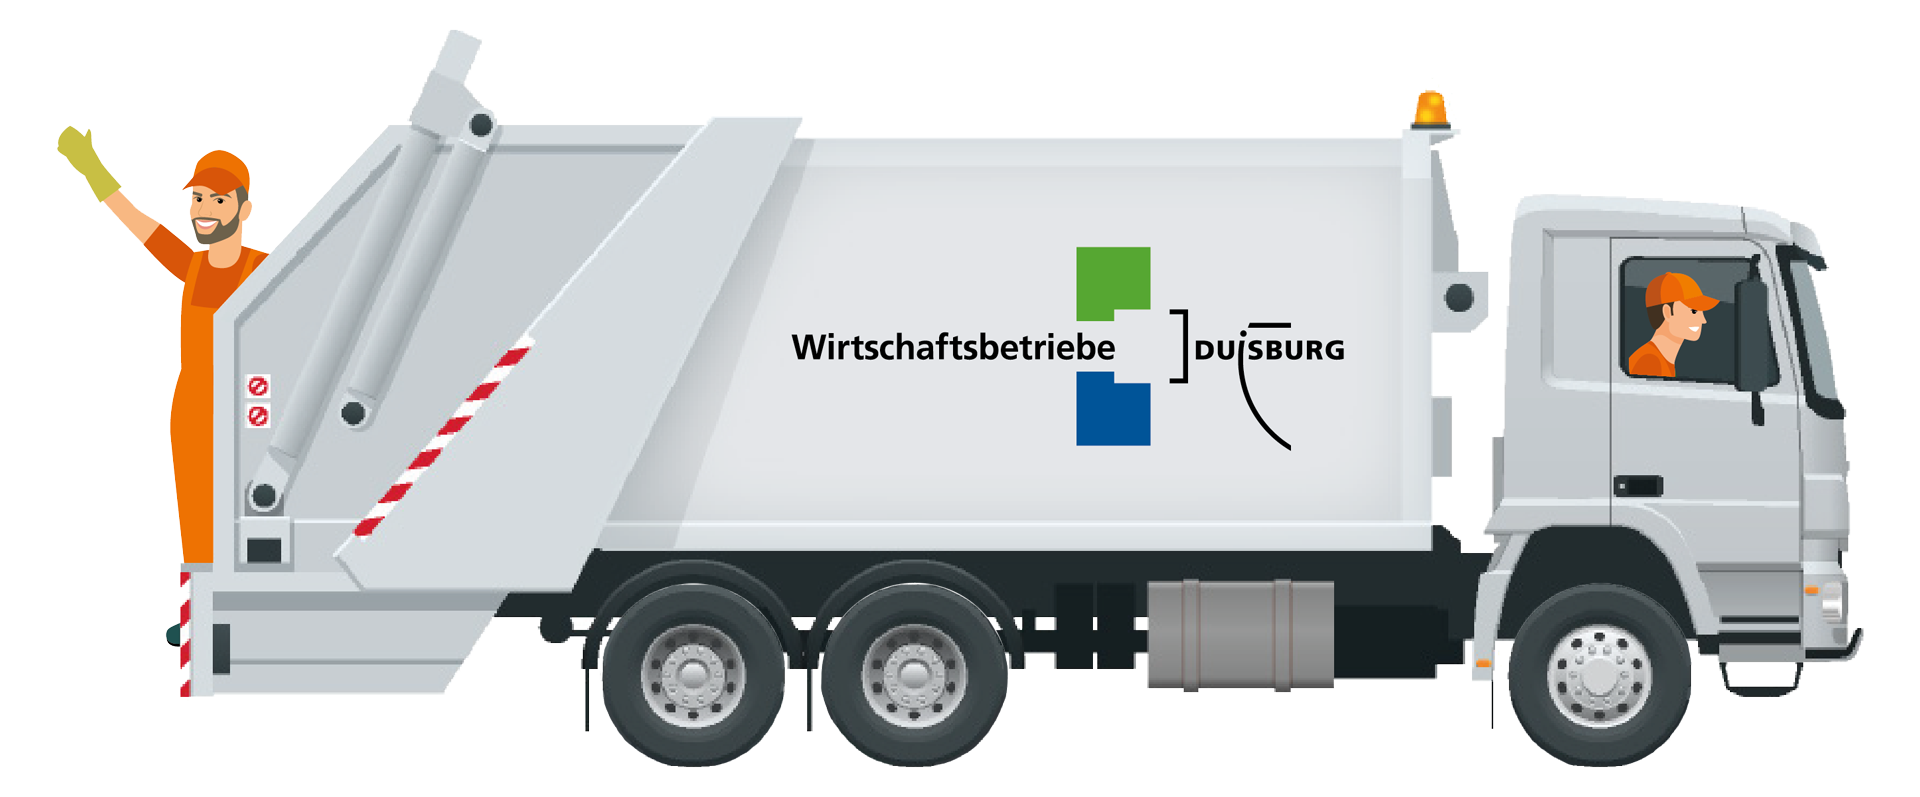 #vollimtrennt - Müllfahrzeug - Wirtschaftsbetriebe Duisburg